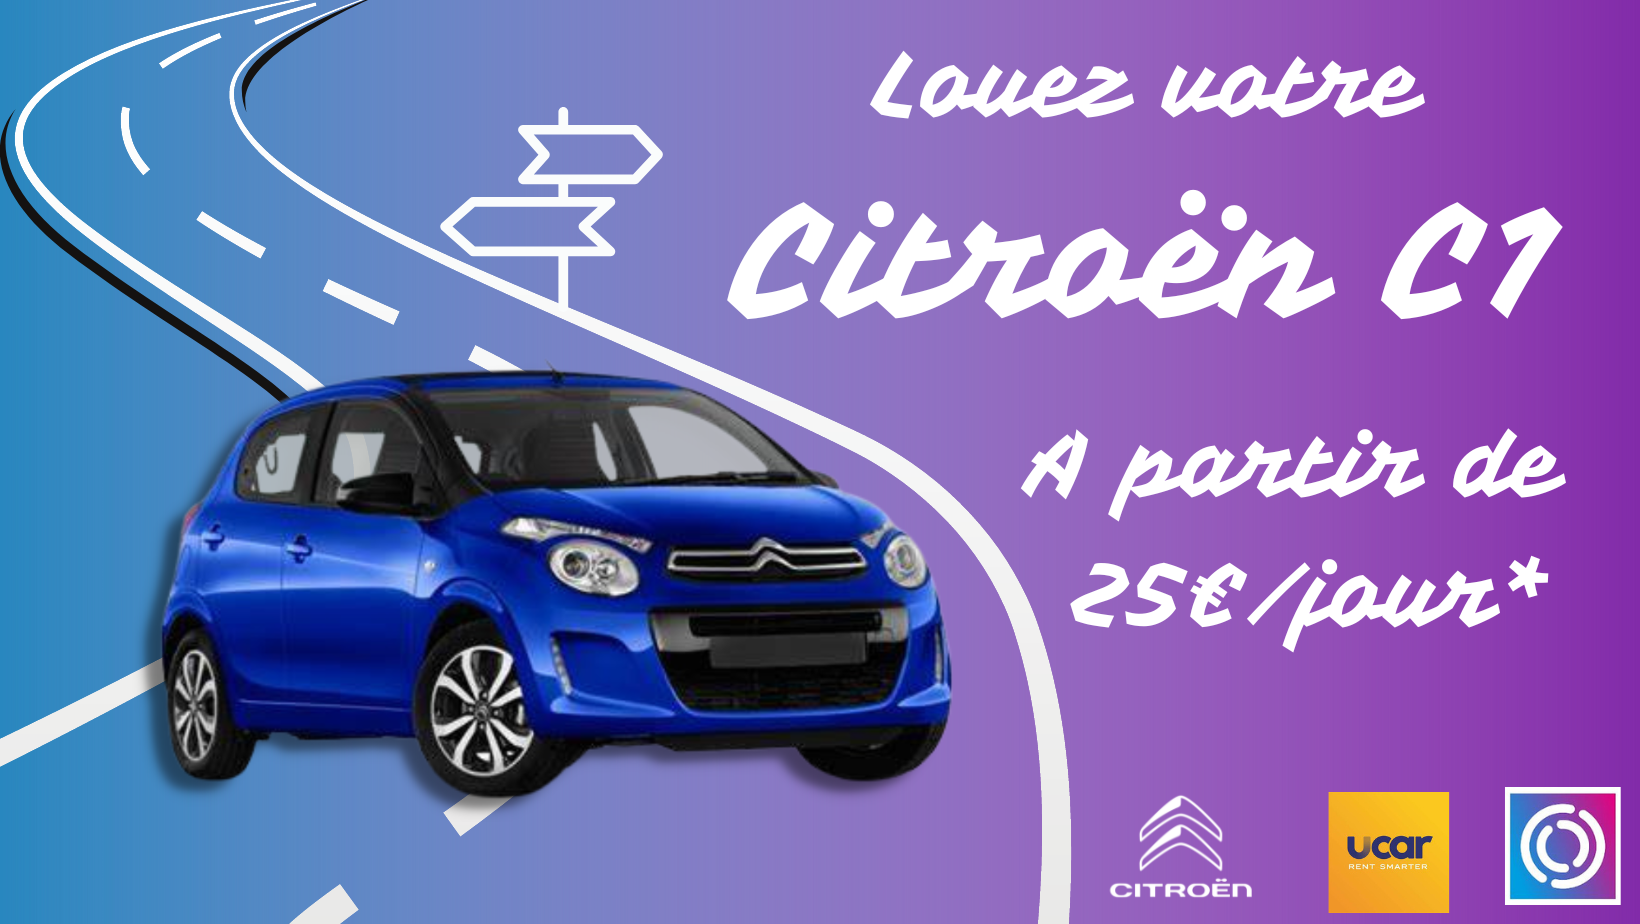 Louez votre Citroën chez Citroën Midi Auto Brest